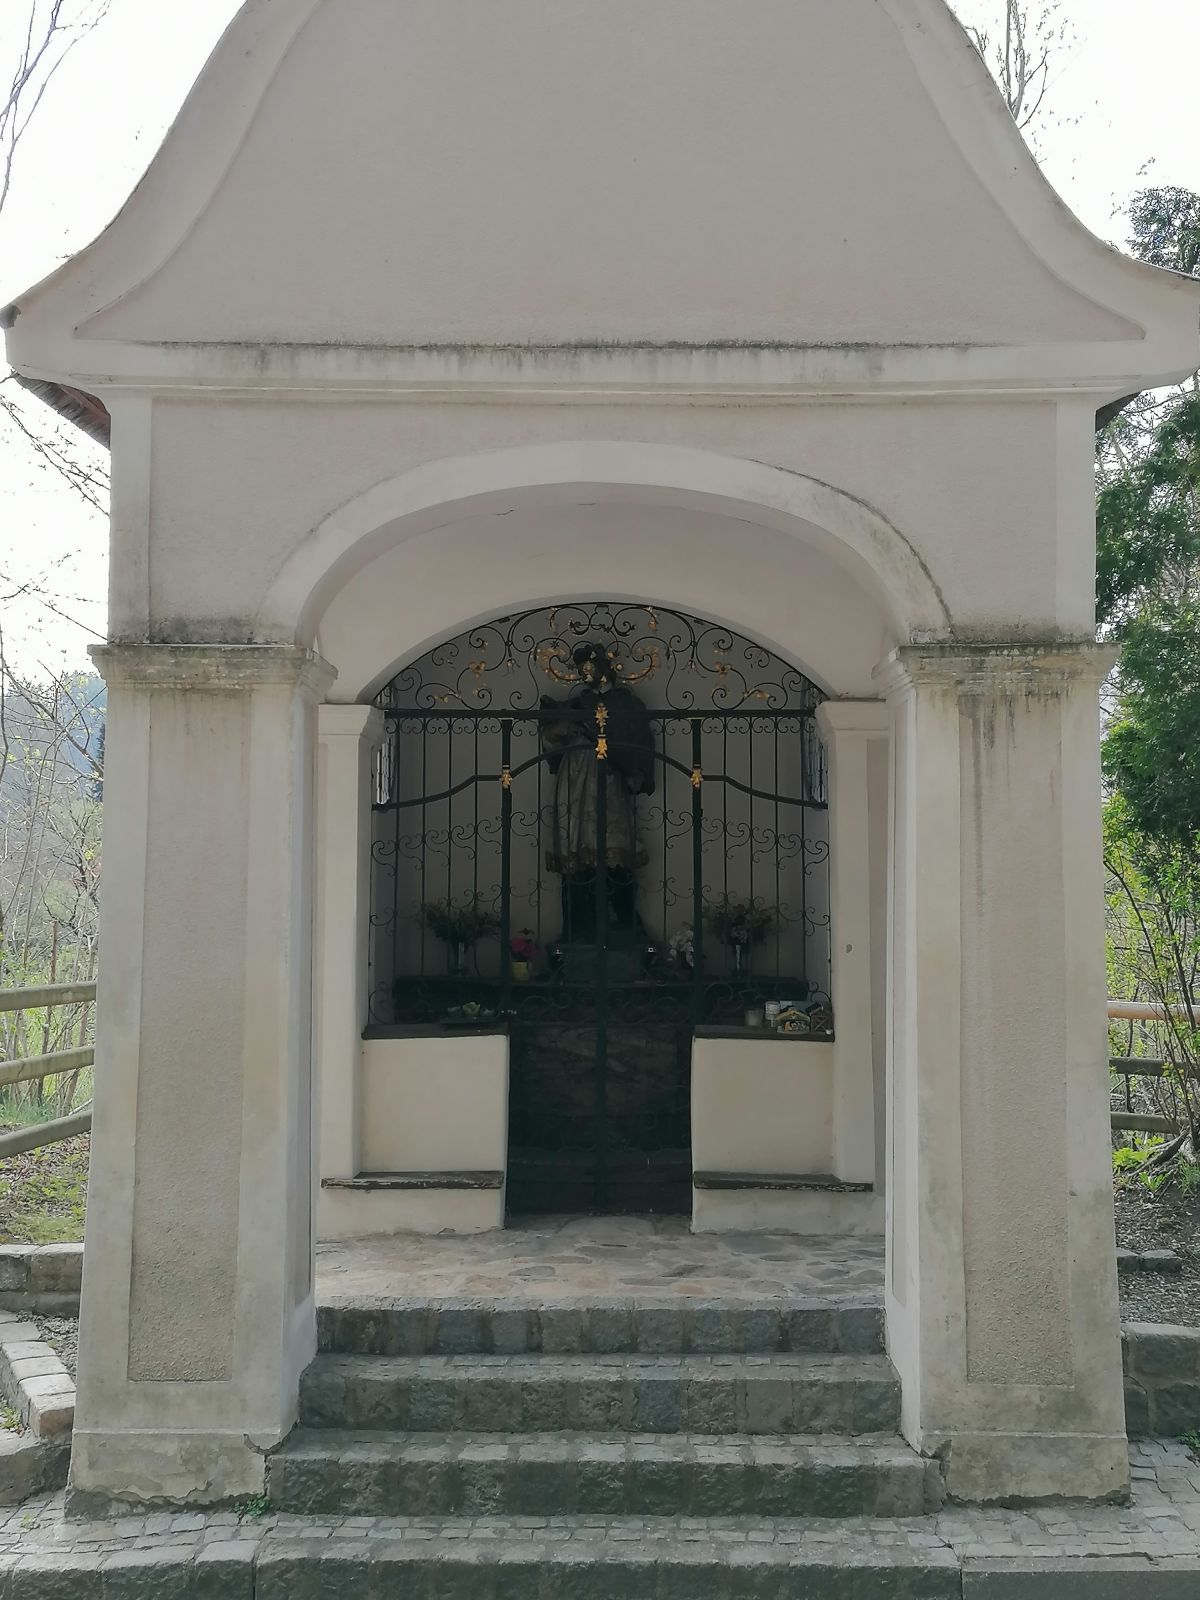 Nepomuk Kapelle in Göss, Leoben